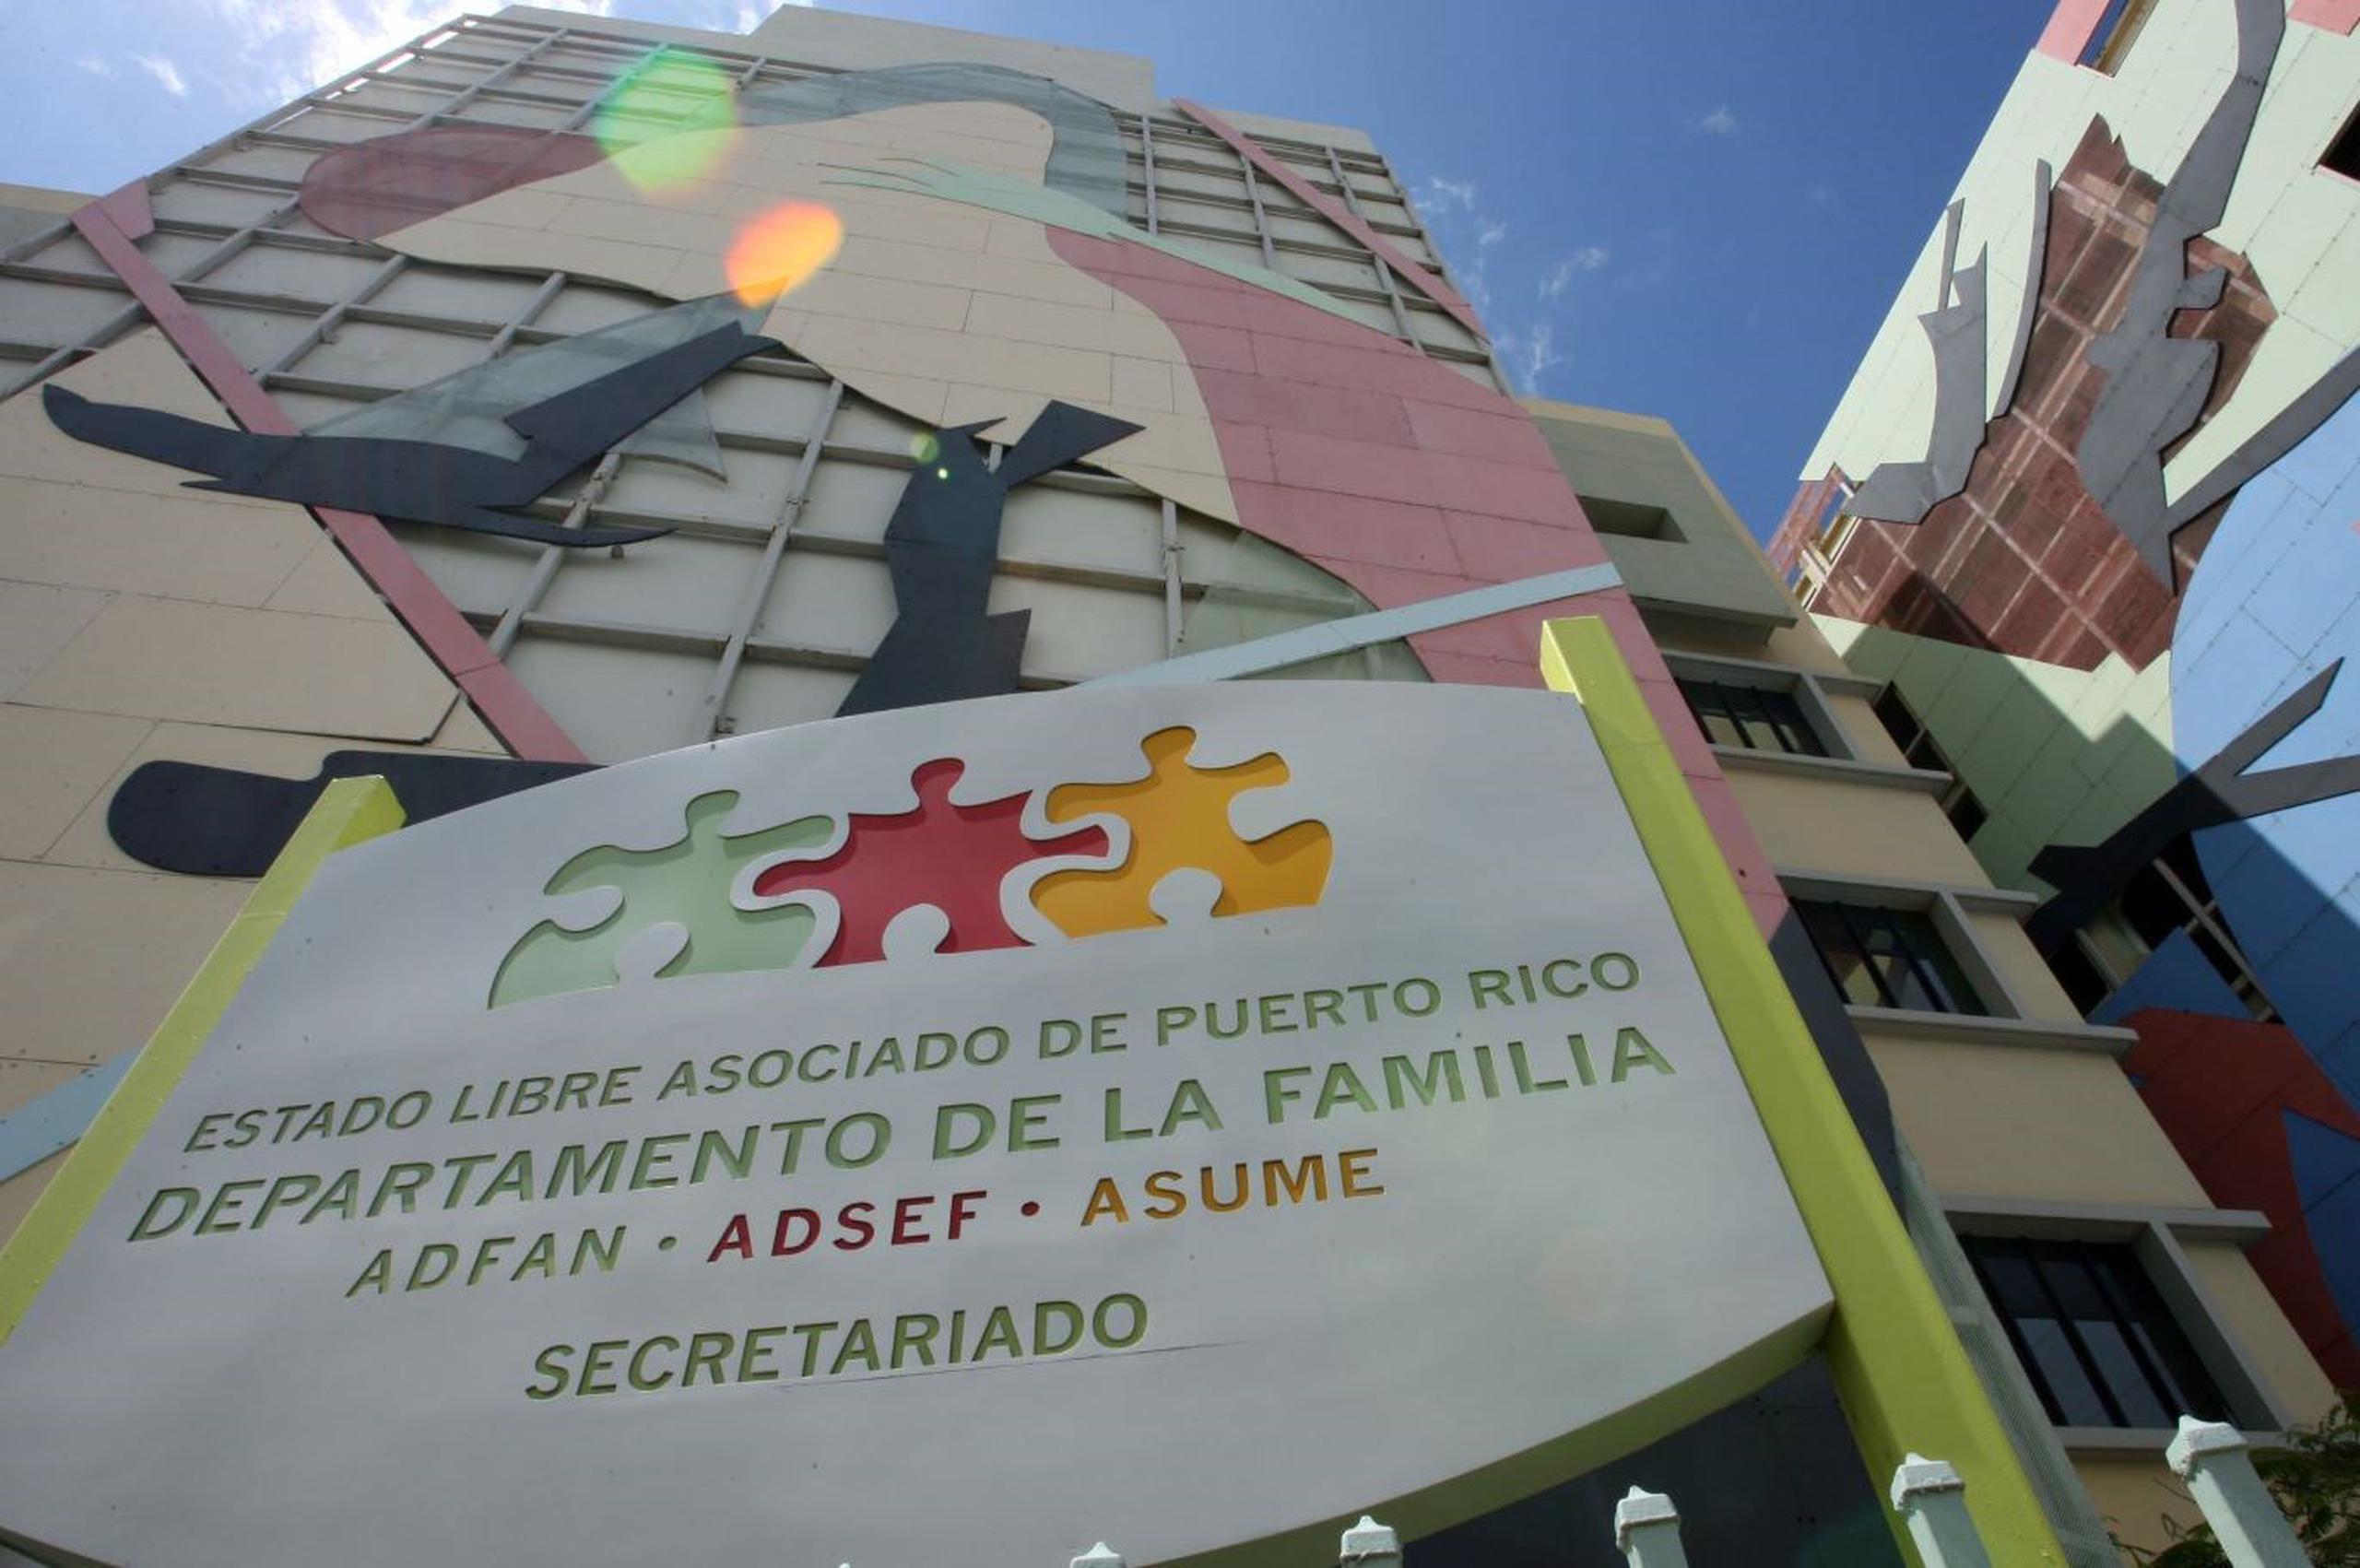 La División de Delitos Sexuales y Maltrato a Menores del área de Aibonito, junto al Departamento de la Familia, investiga los hechos. (GFR Media)